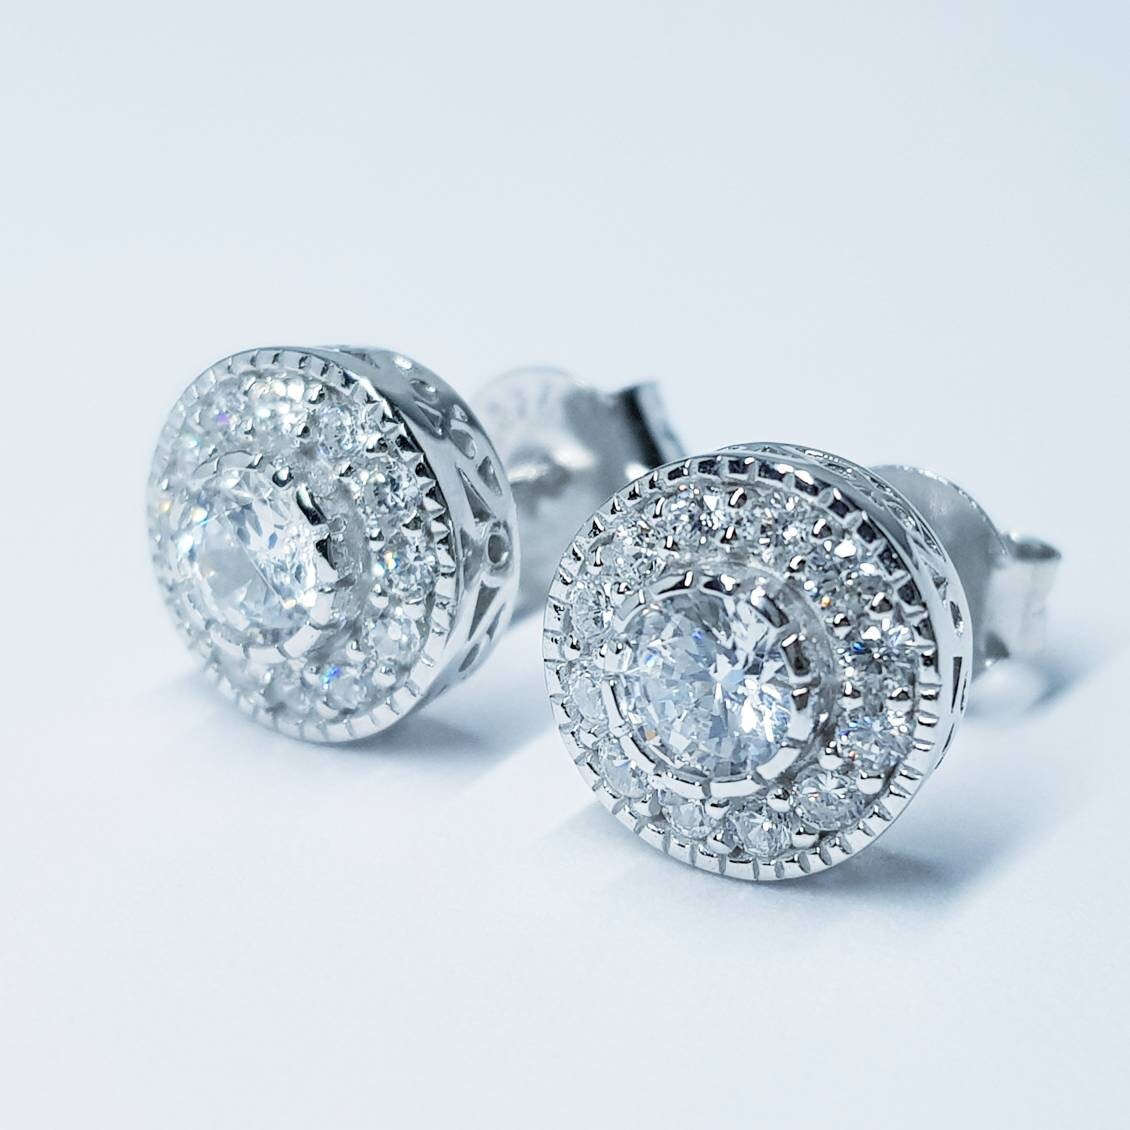 Vintage style Halo Earrings, stud earrings, gifts for women, faux diamond earrings for women with millgrain edge